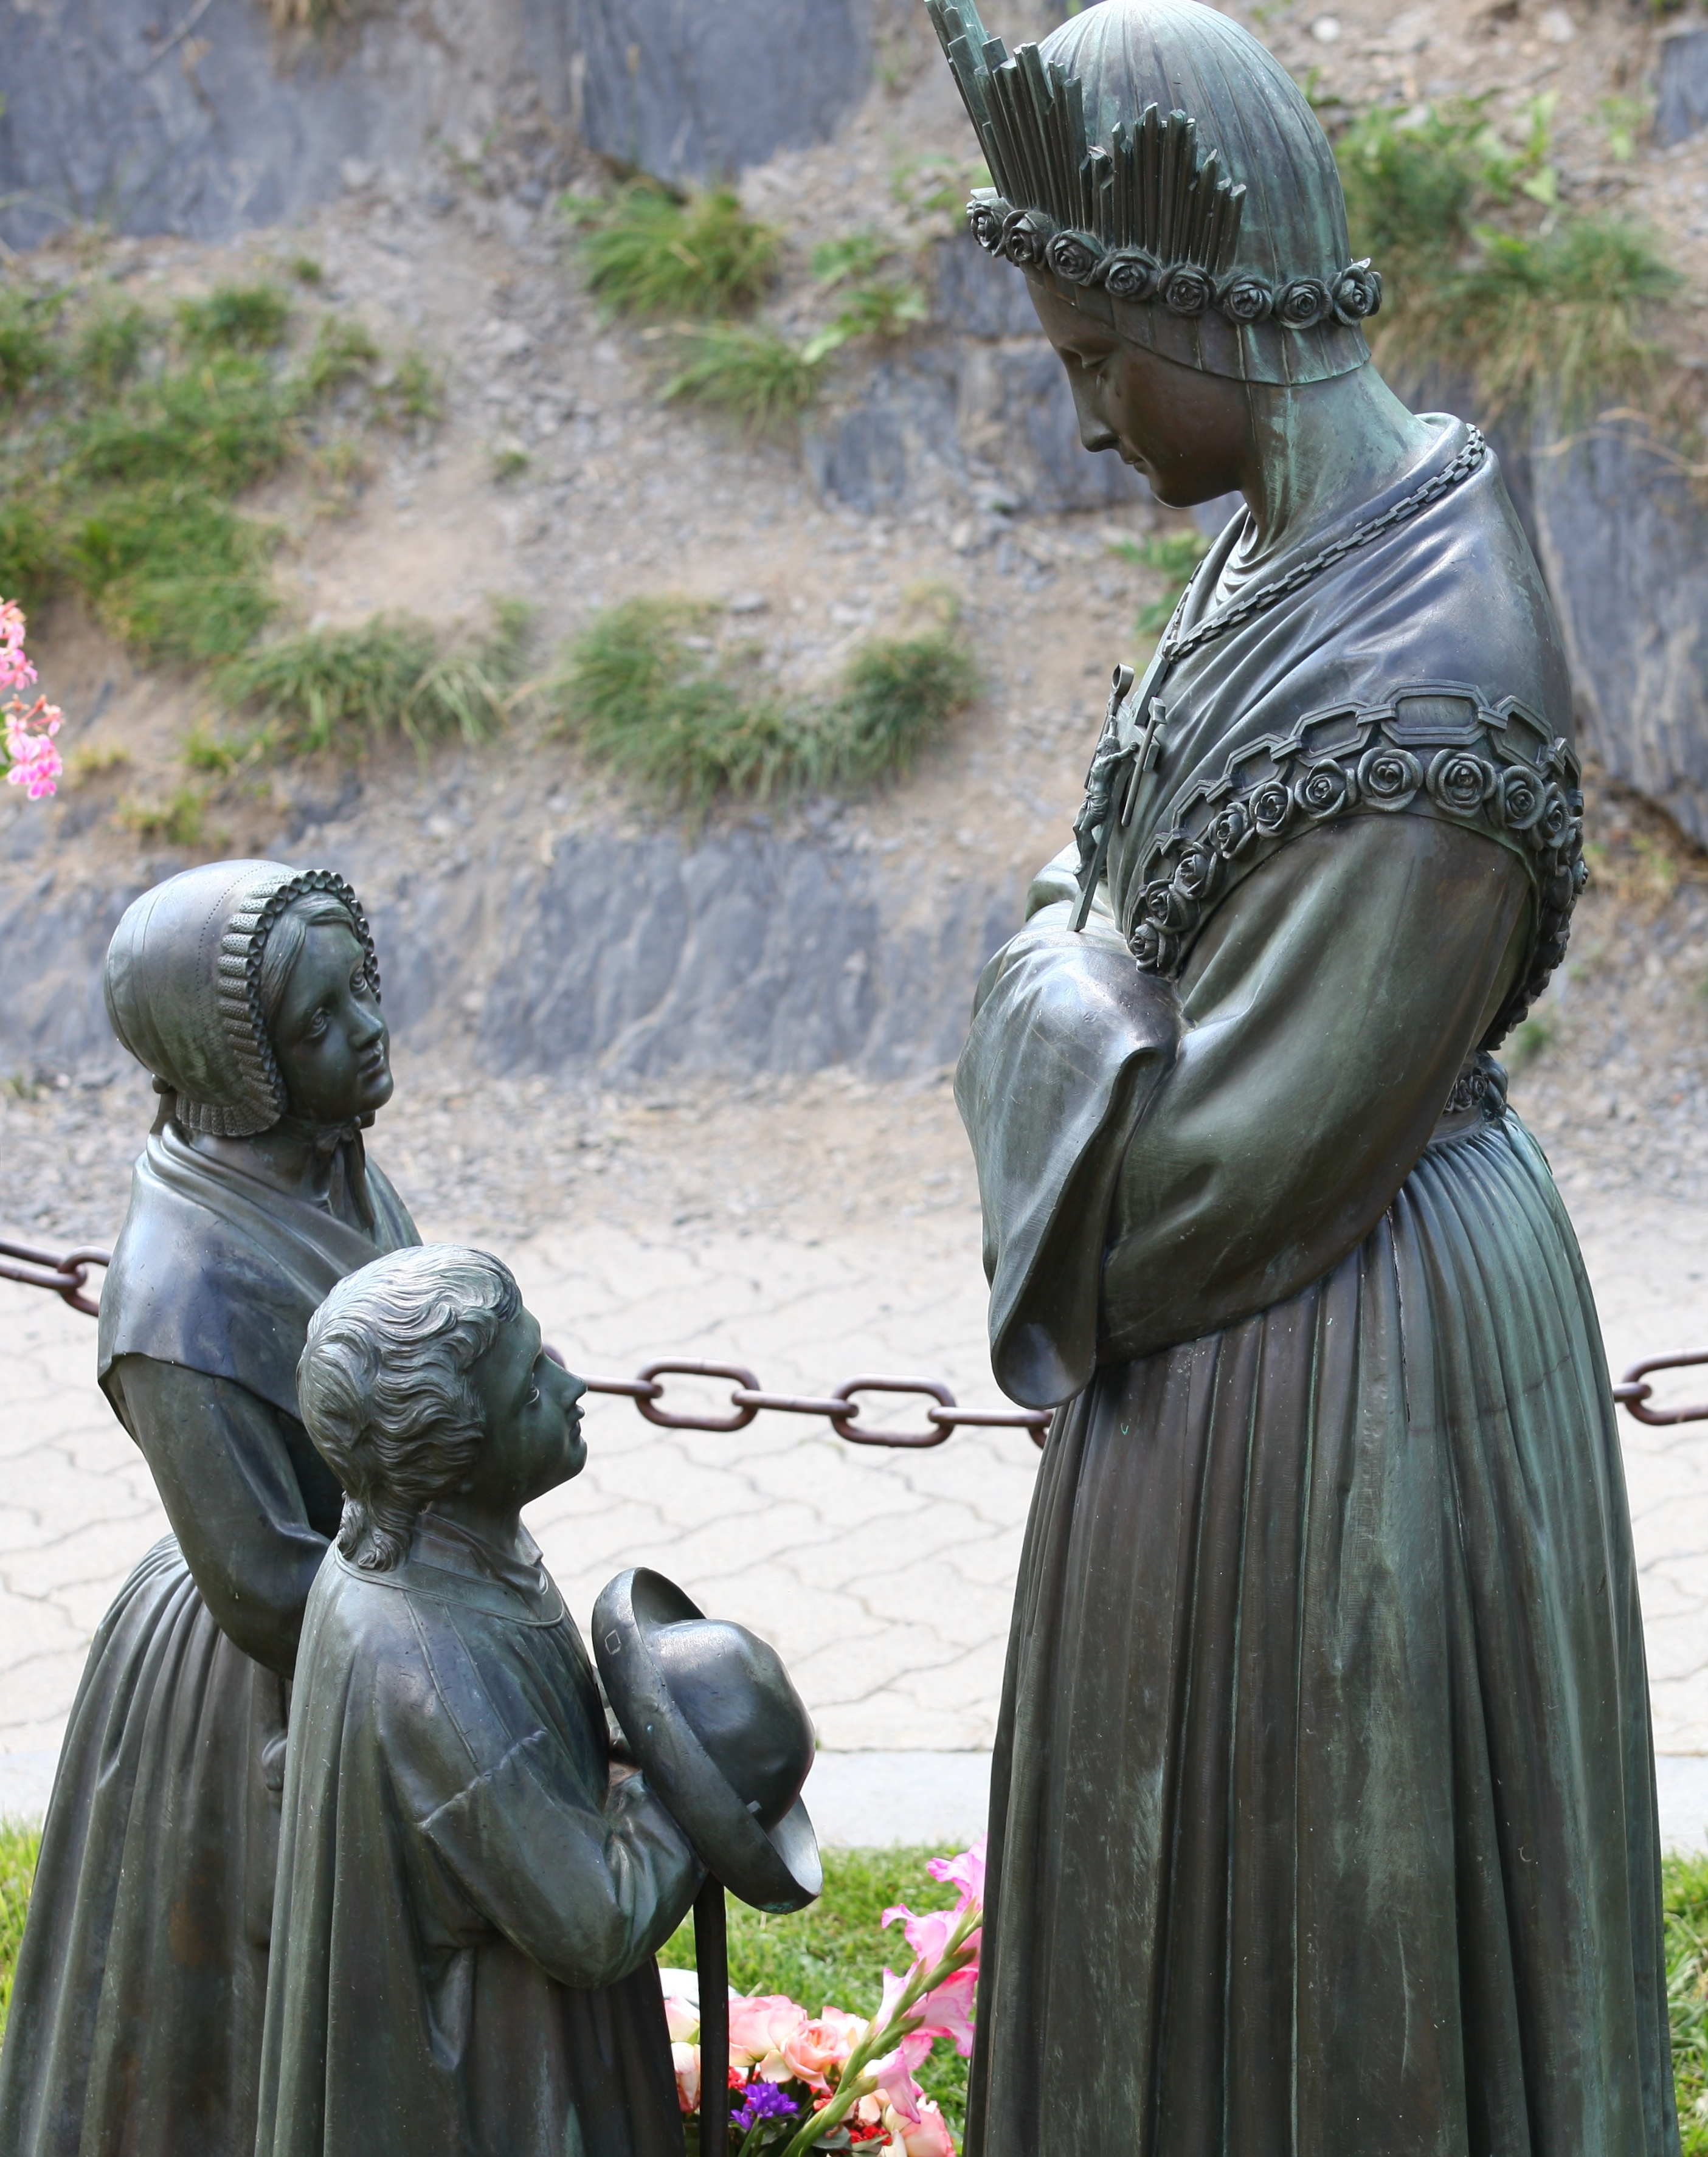 statues near the La Salette sanctuary, France, Europe, August 2013, picture 4